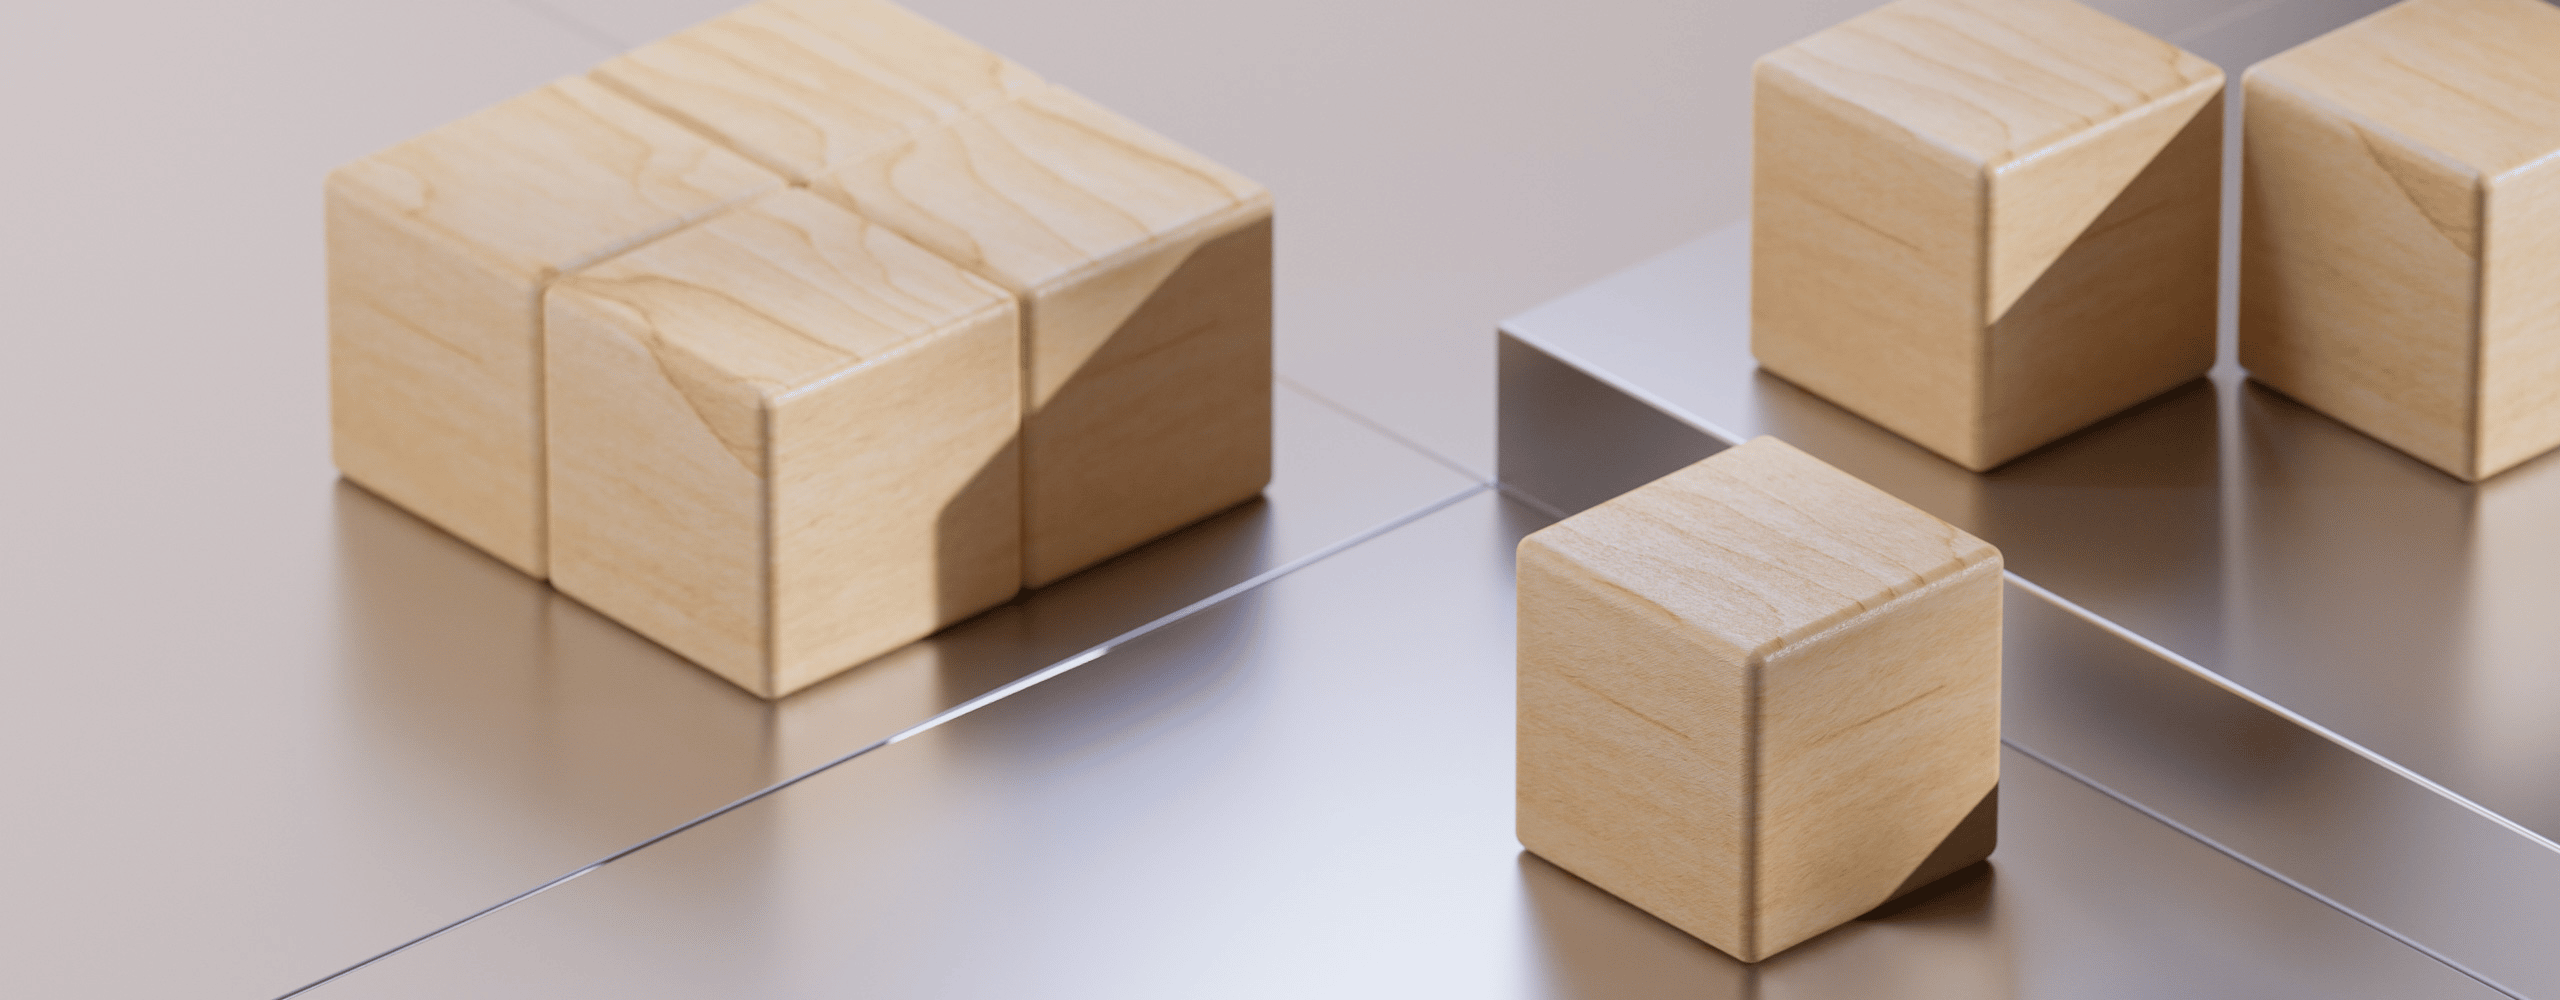 wooden blocks header